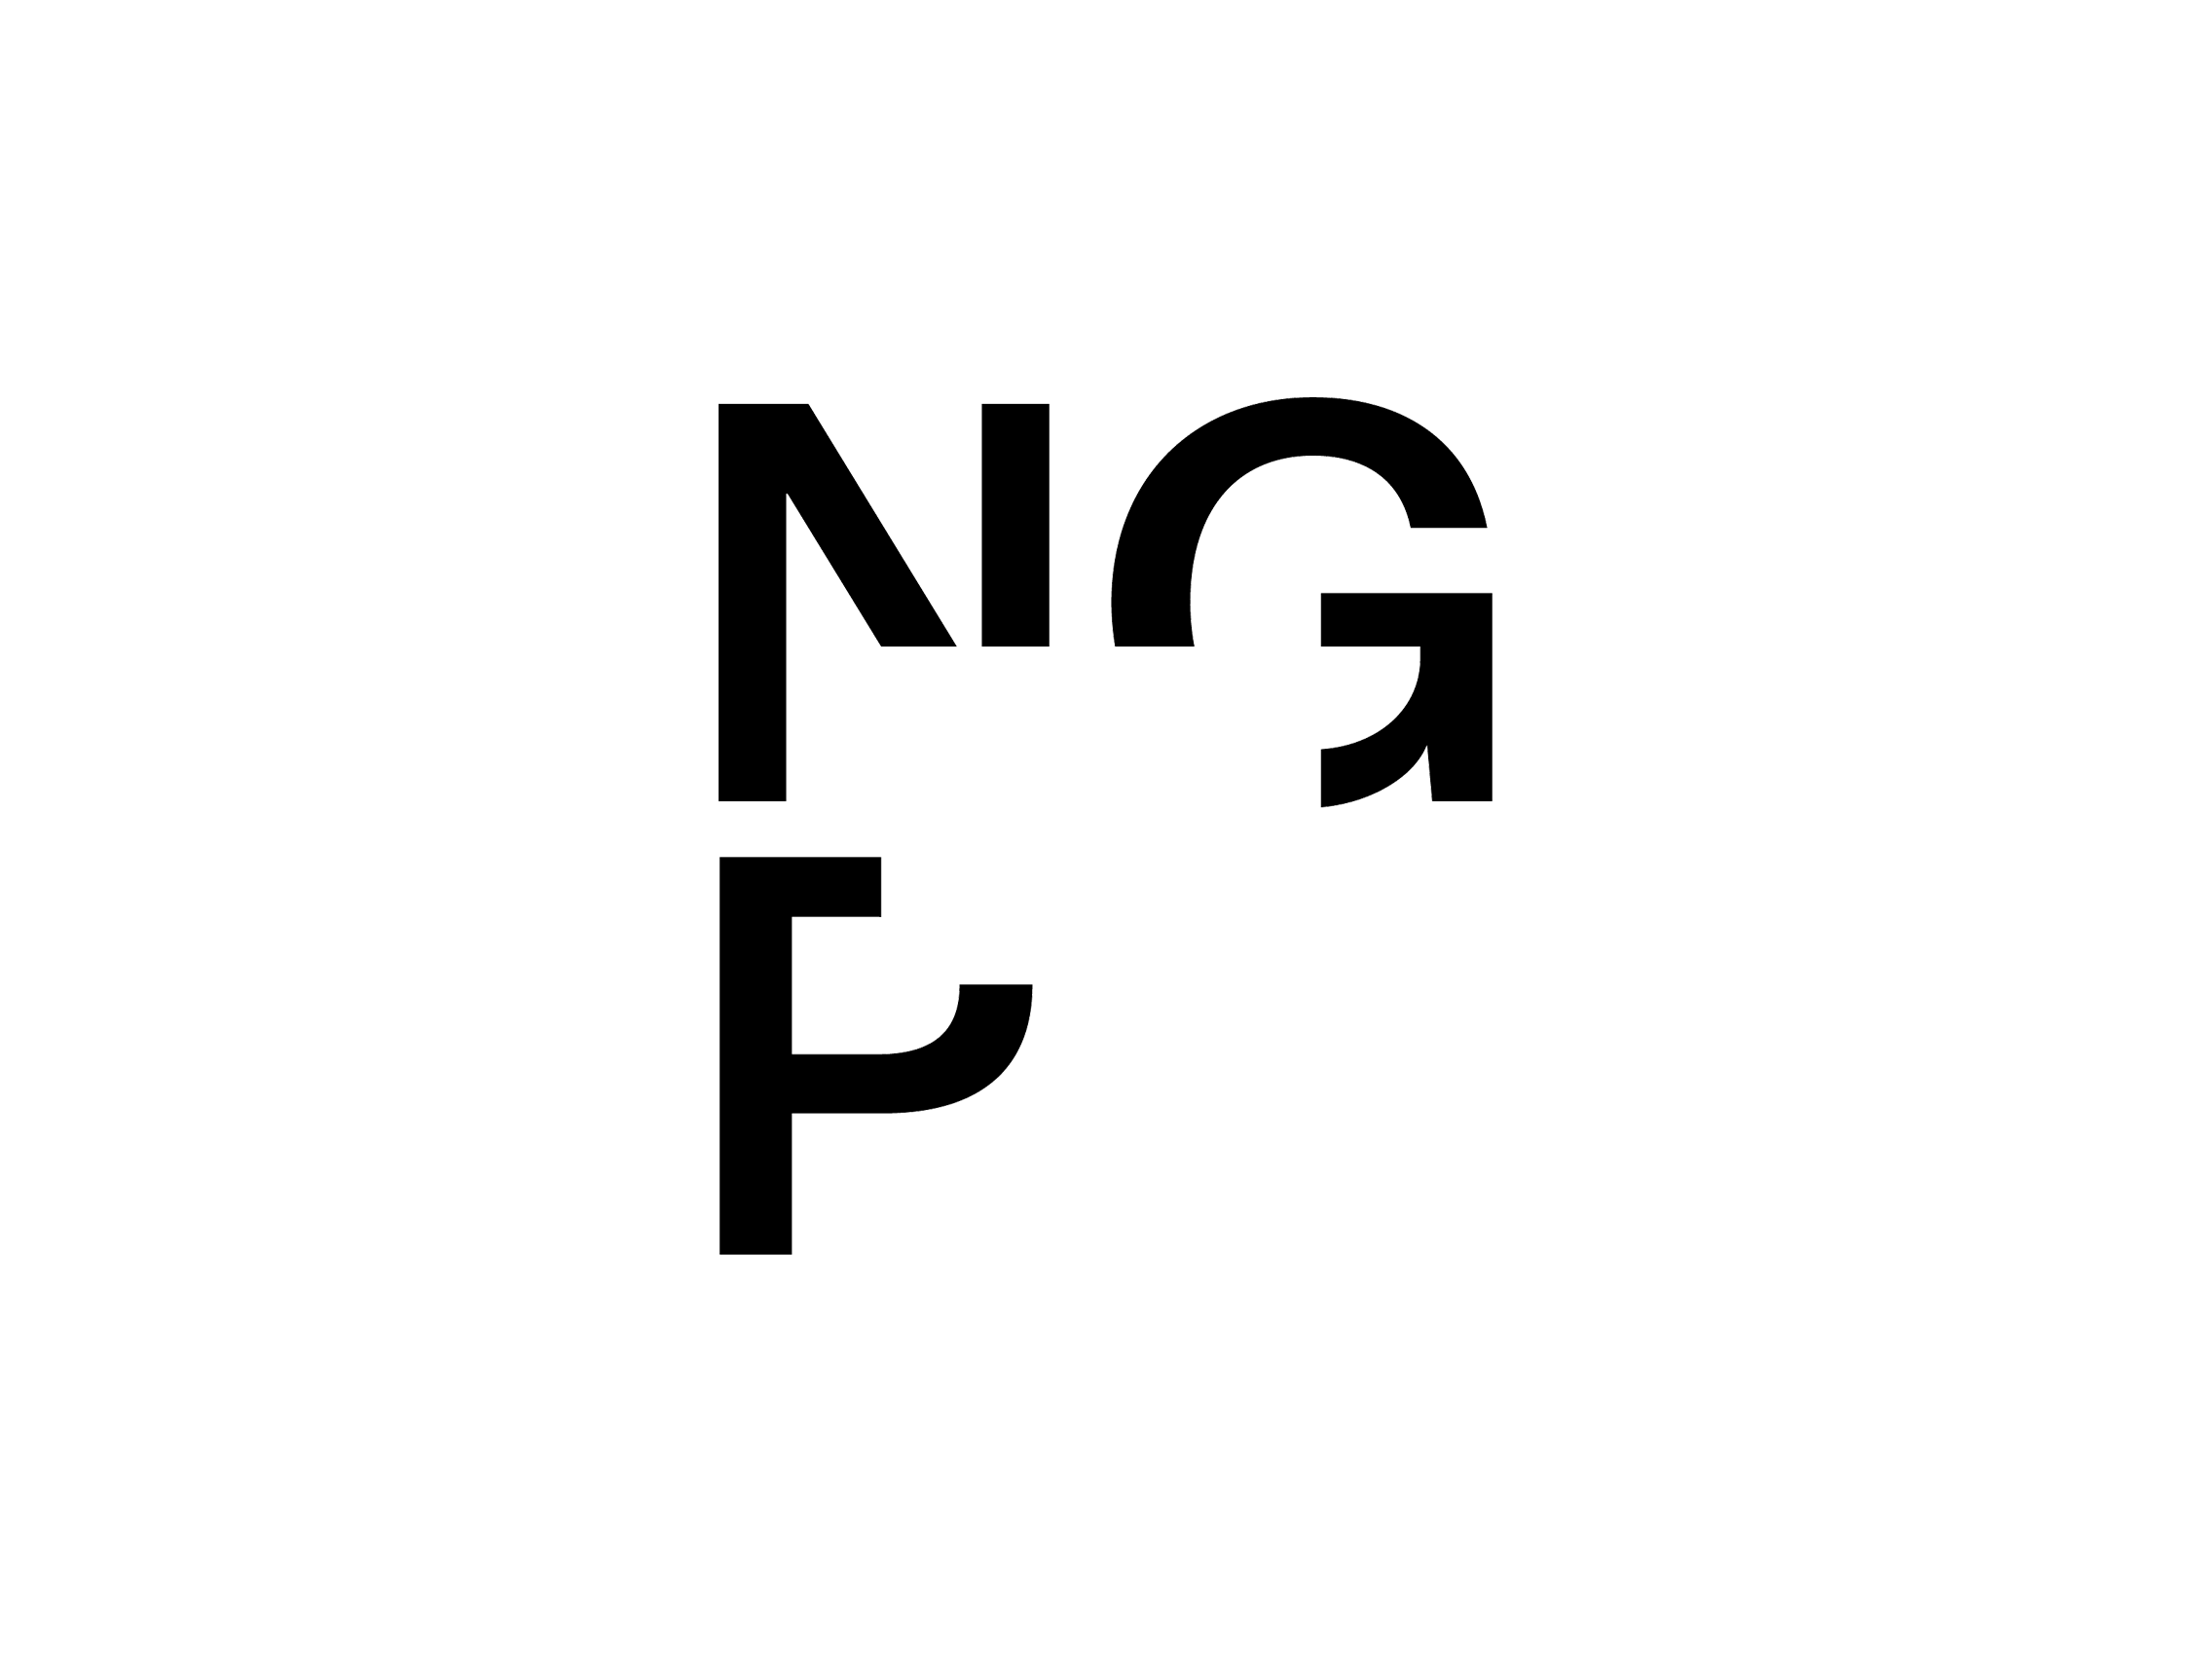 NGP Logo - NGP National Gallery Prague logo 2018